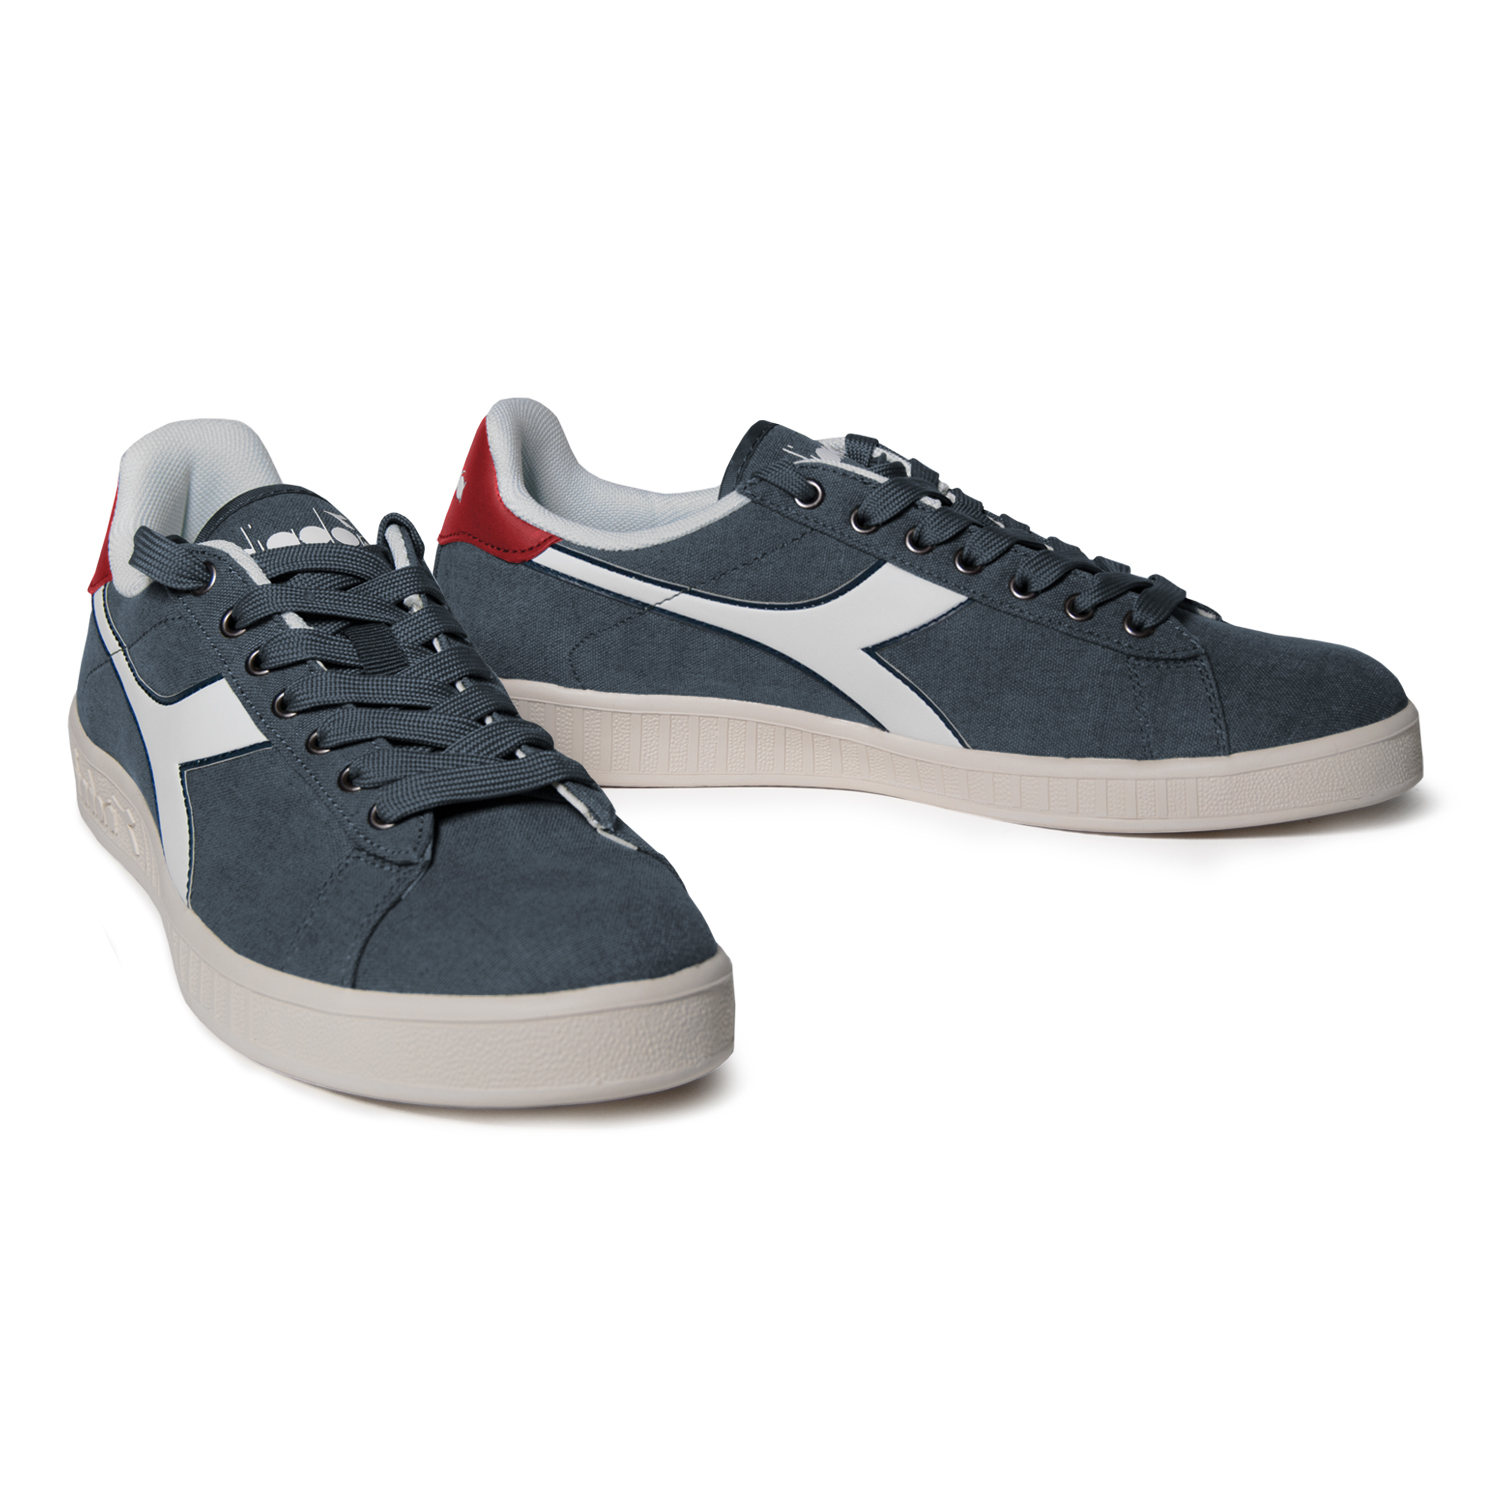 Scarpe Sneaker Uomo DIADORA Modello Game CV Vari Colori | eBay